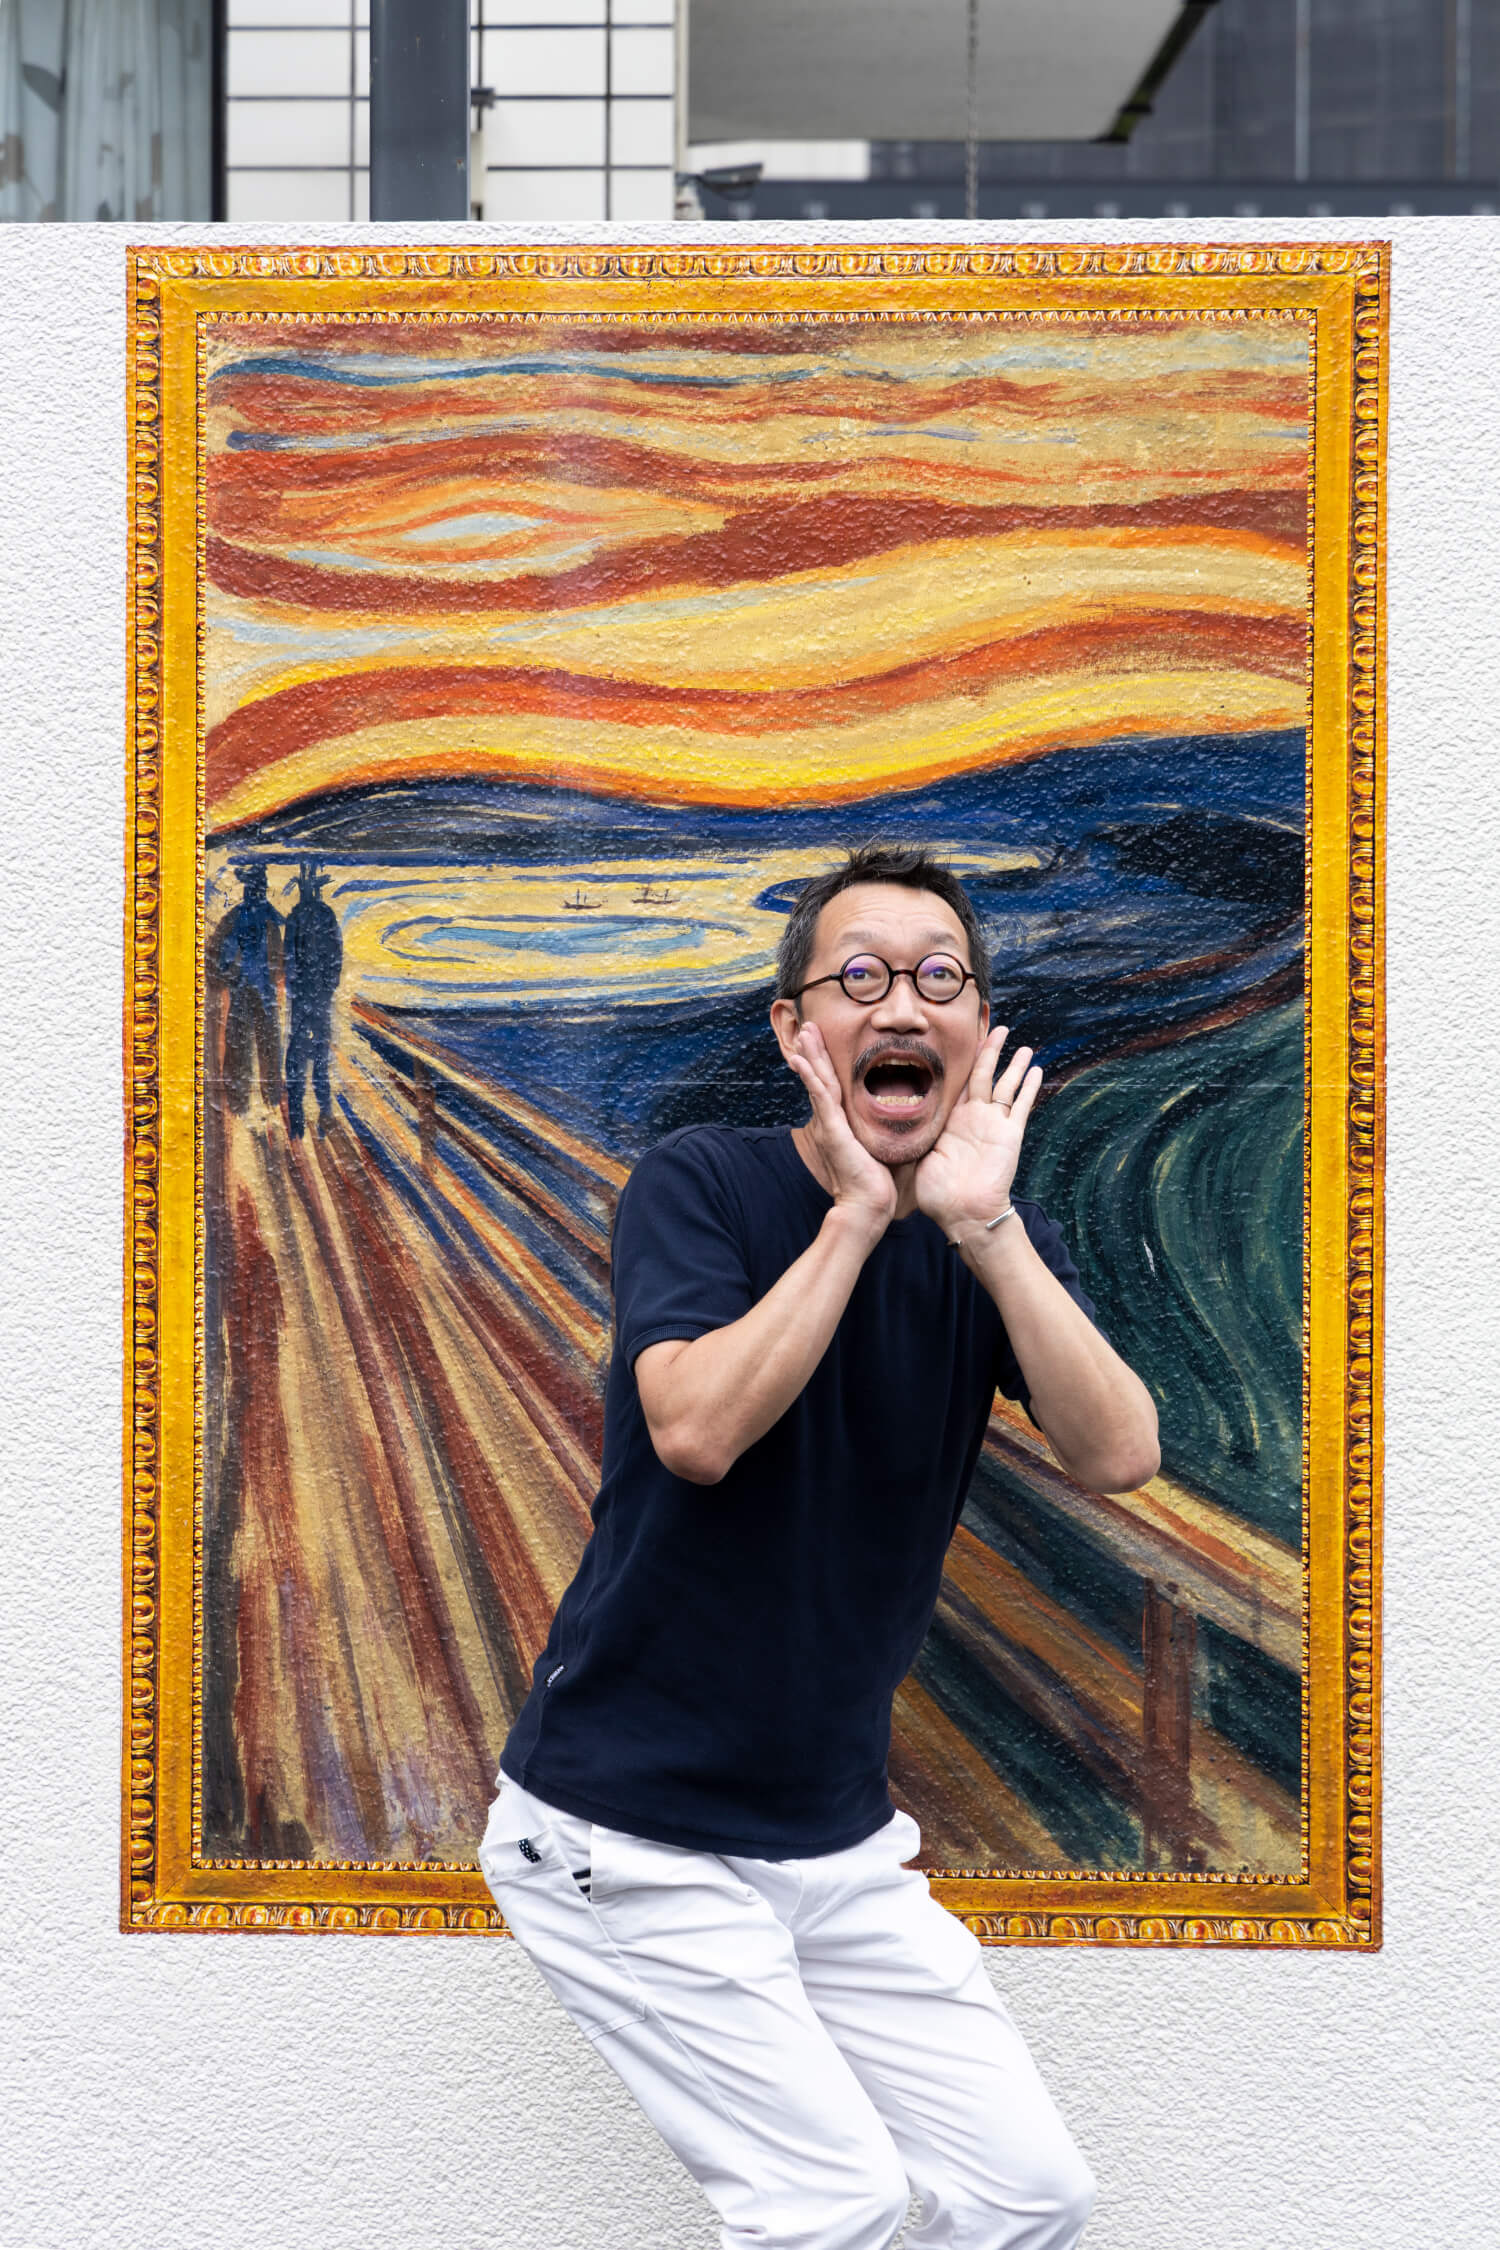 『ノルウェー大使館』の塀に描かれている、同国出身の画家・ムンクの「叫び」の“背景”。絶対やるでしょ、これ。